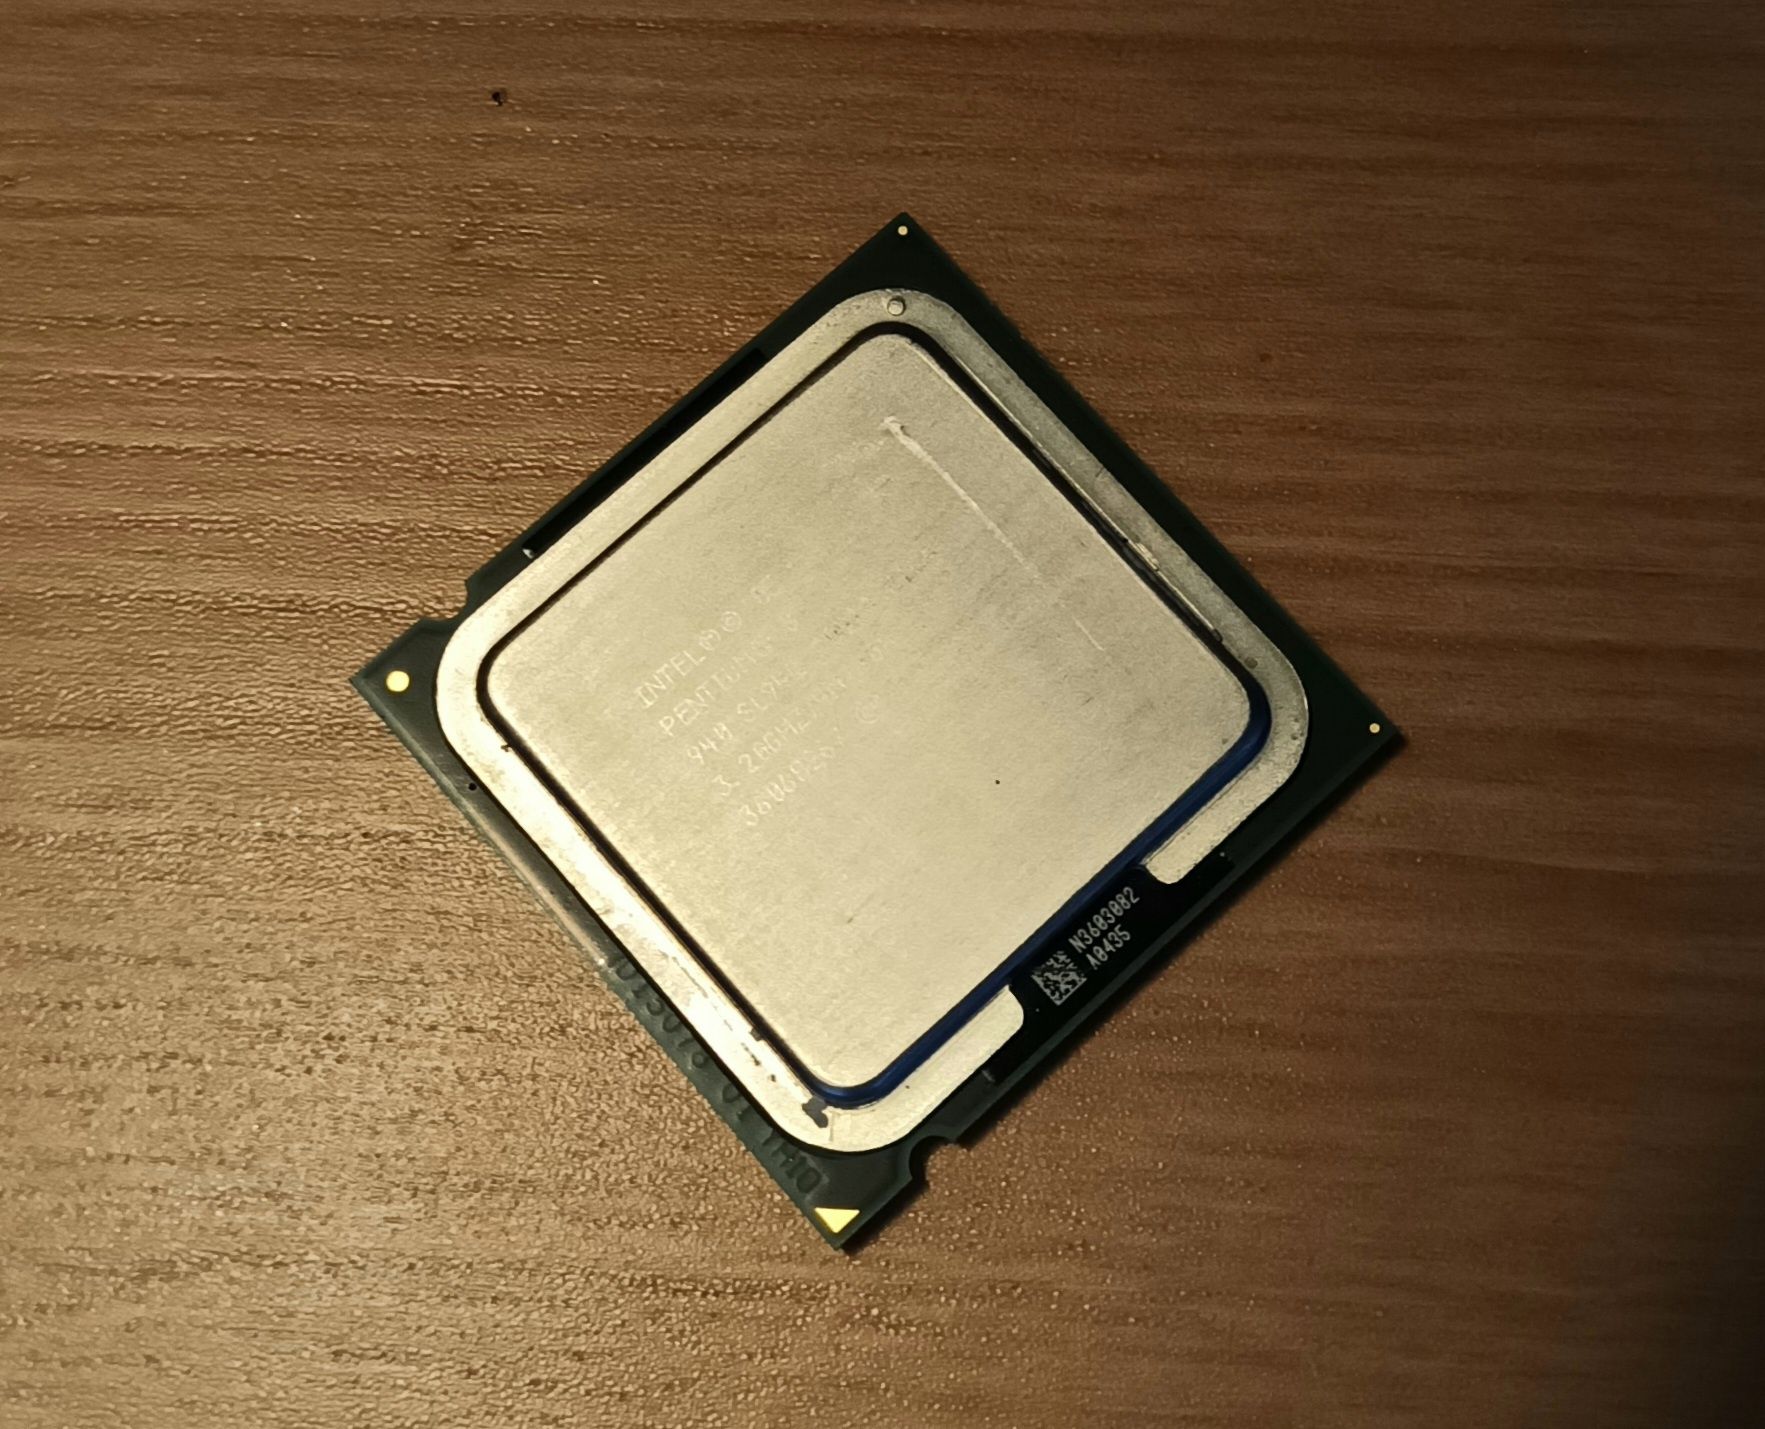 Cpu/processador intel Pentium D940 a 3.20 Ghz para socket 775